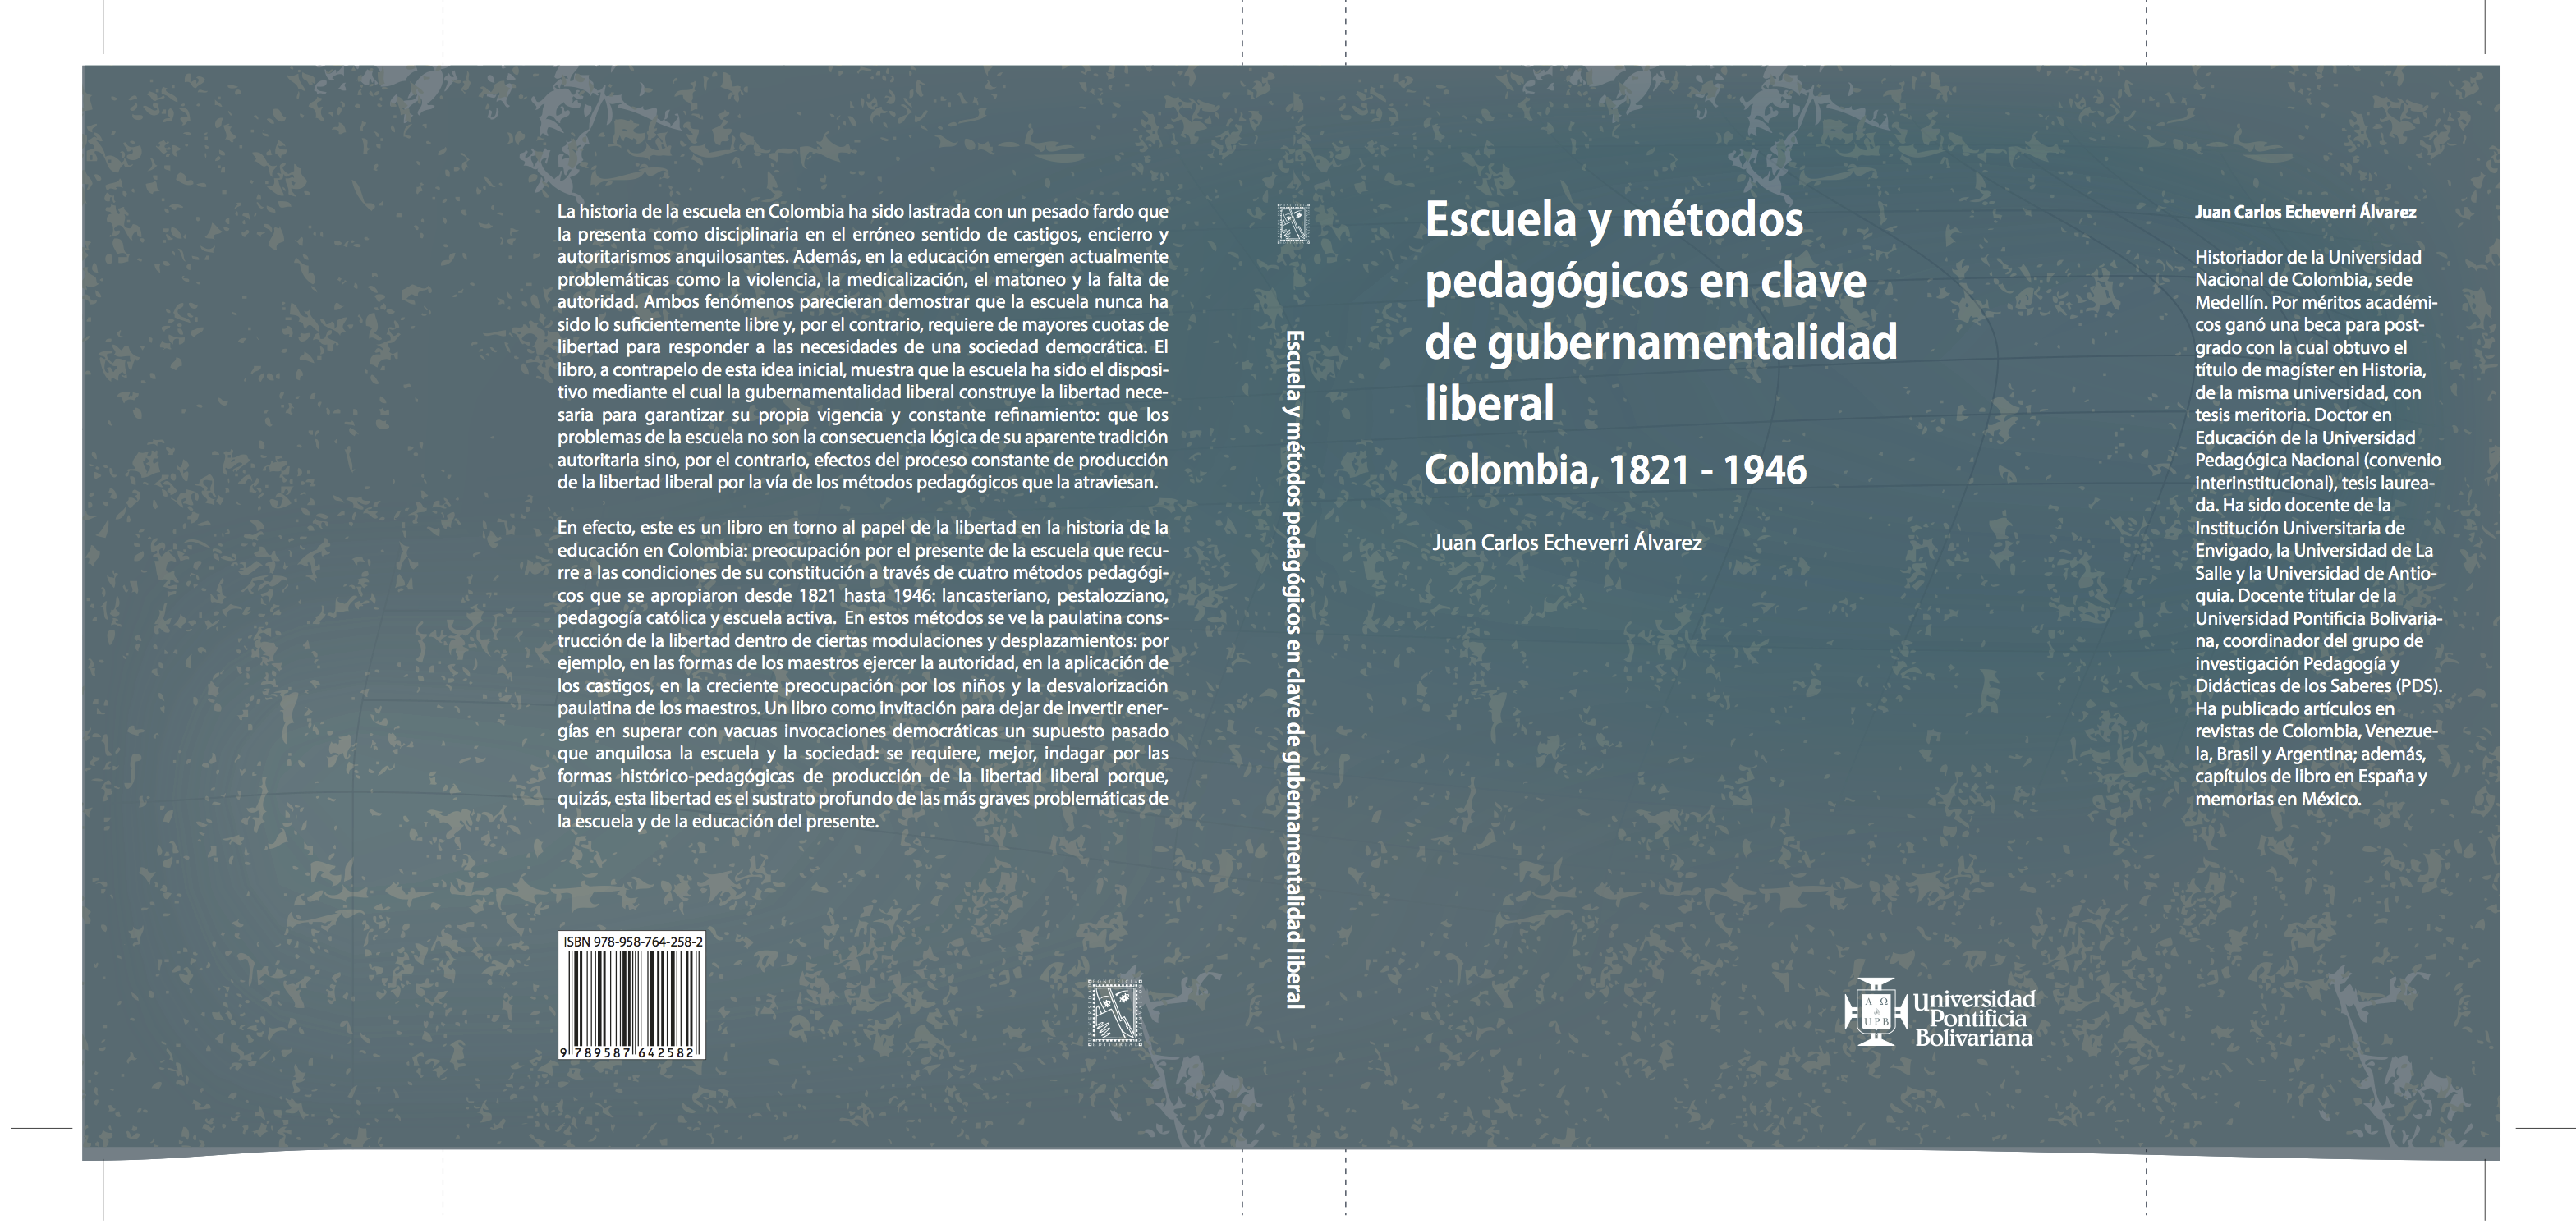 Escuela y métodos pedagógicos en clave de gubernamentalidad liberal (Colombia, 1821 – 1946)